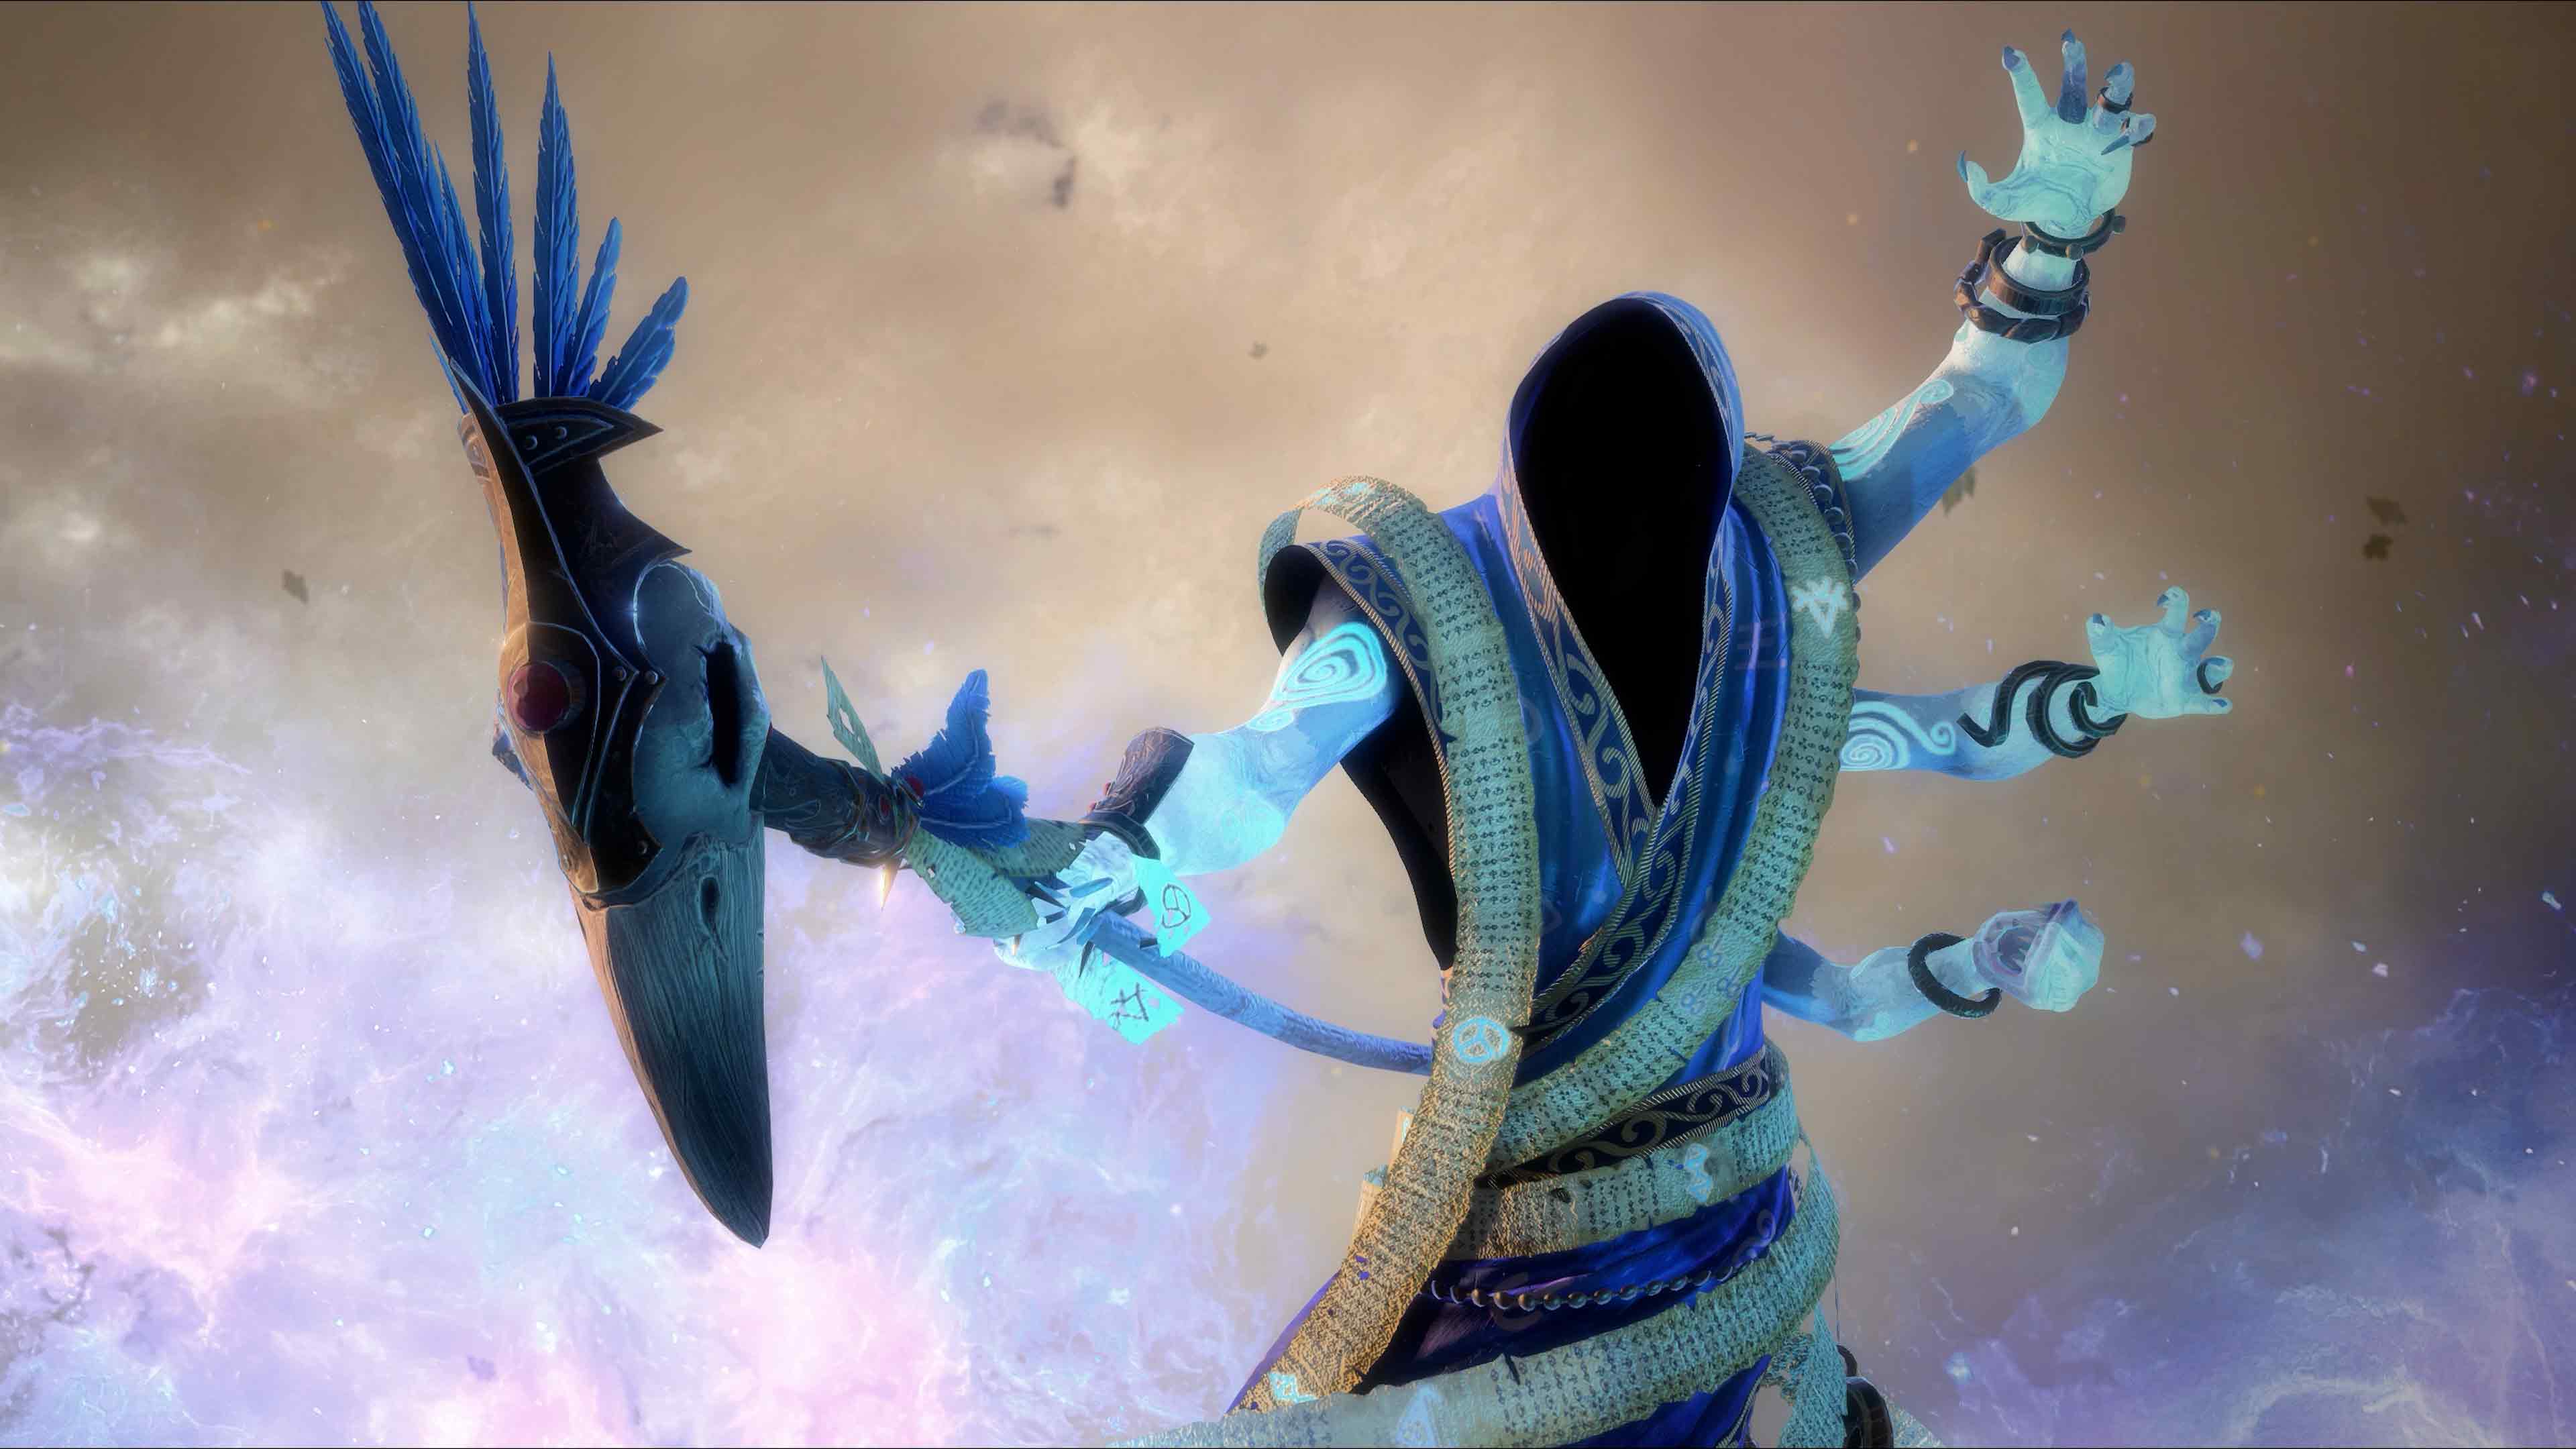 《全軍破敵戰鎚3》DLC《Shadows of Change》 現已加入巫婆魔法、英雄與恐怖巨獸等全新內容